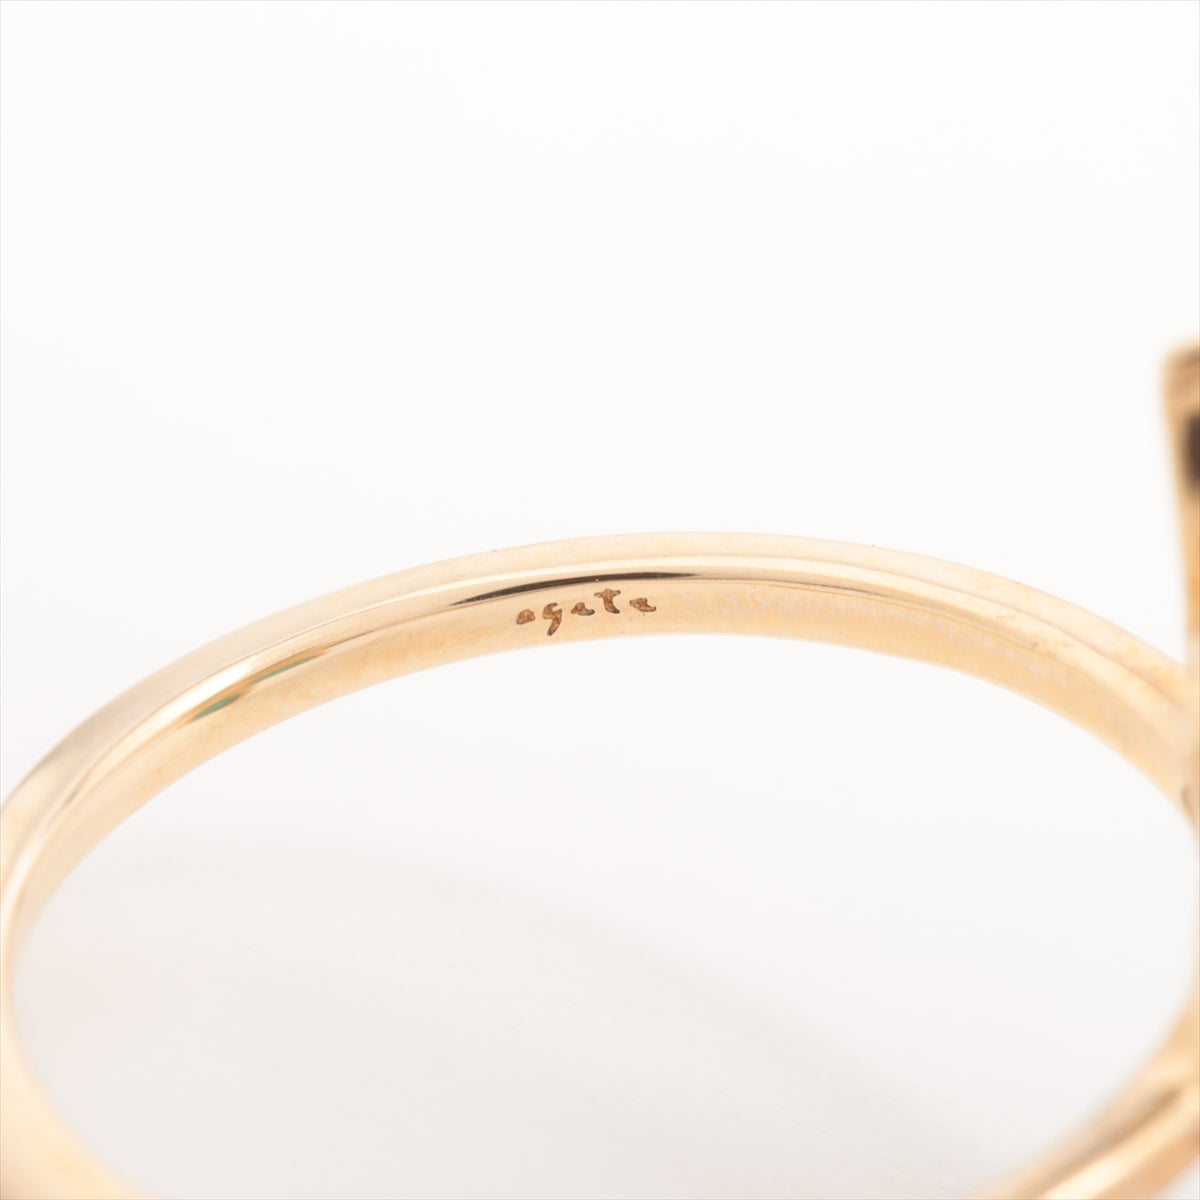 Agat Turquoise Diamond Ring K10 (YG) 1.4g 0.01 E